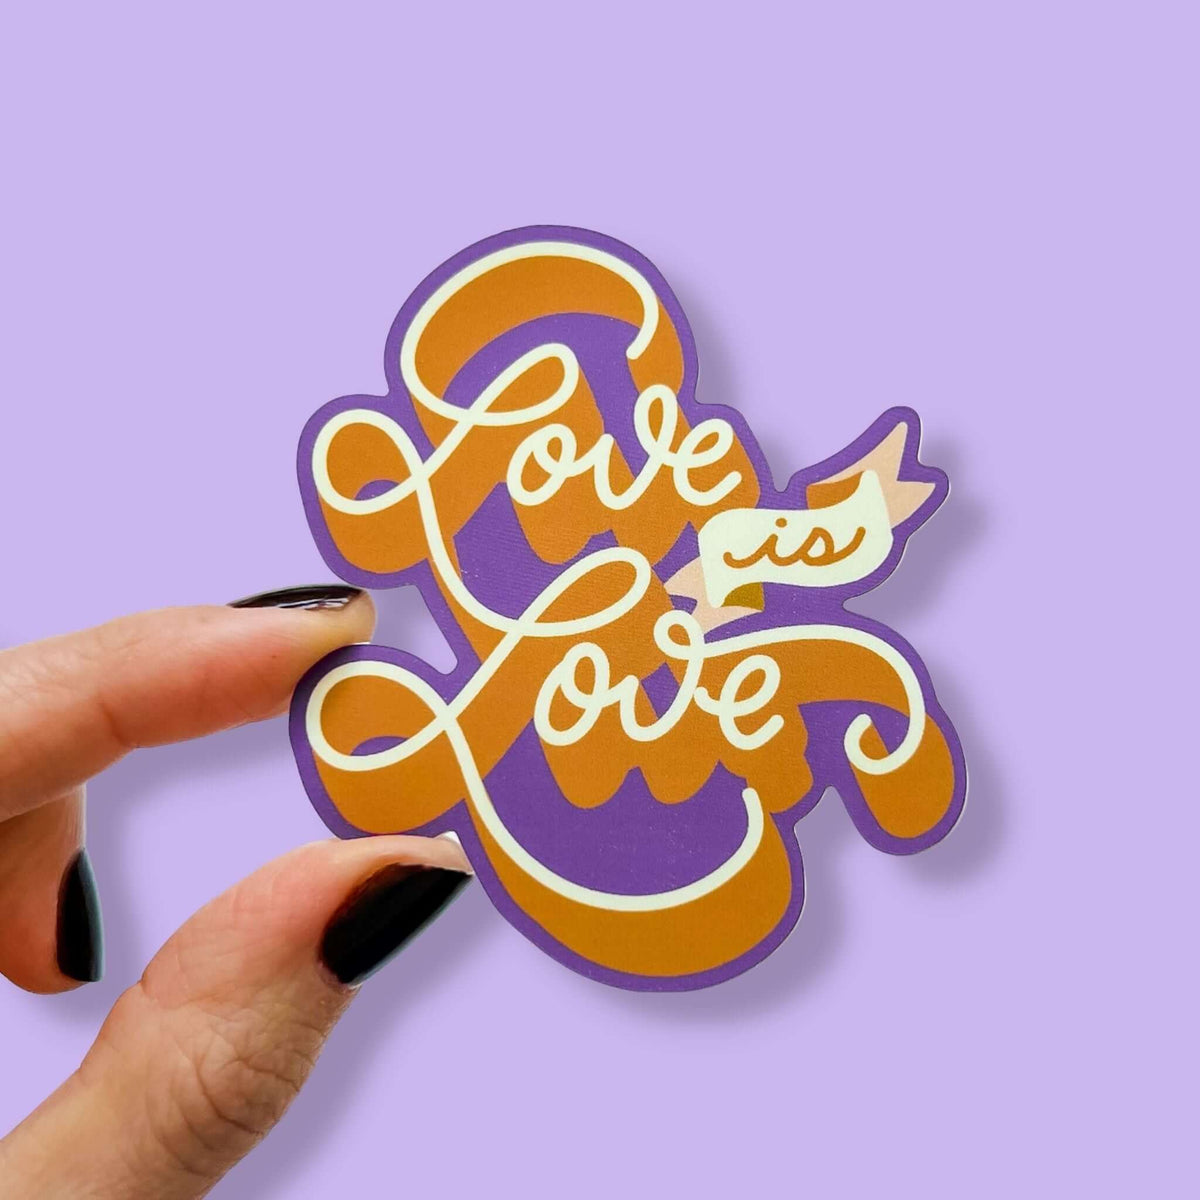 Love is Love Sticker LGBTQIA+